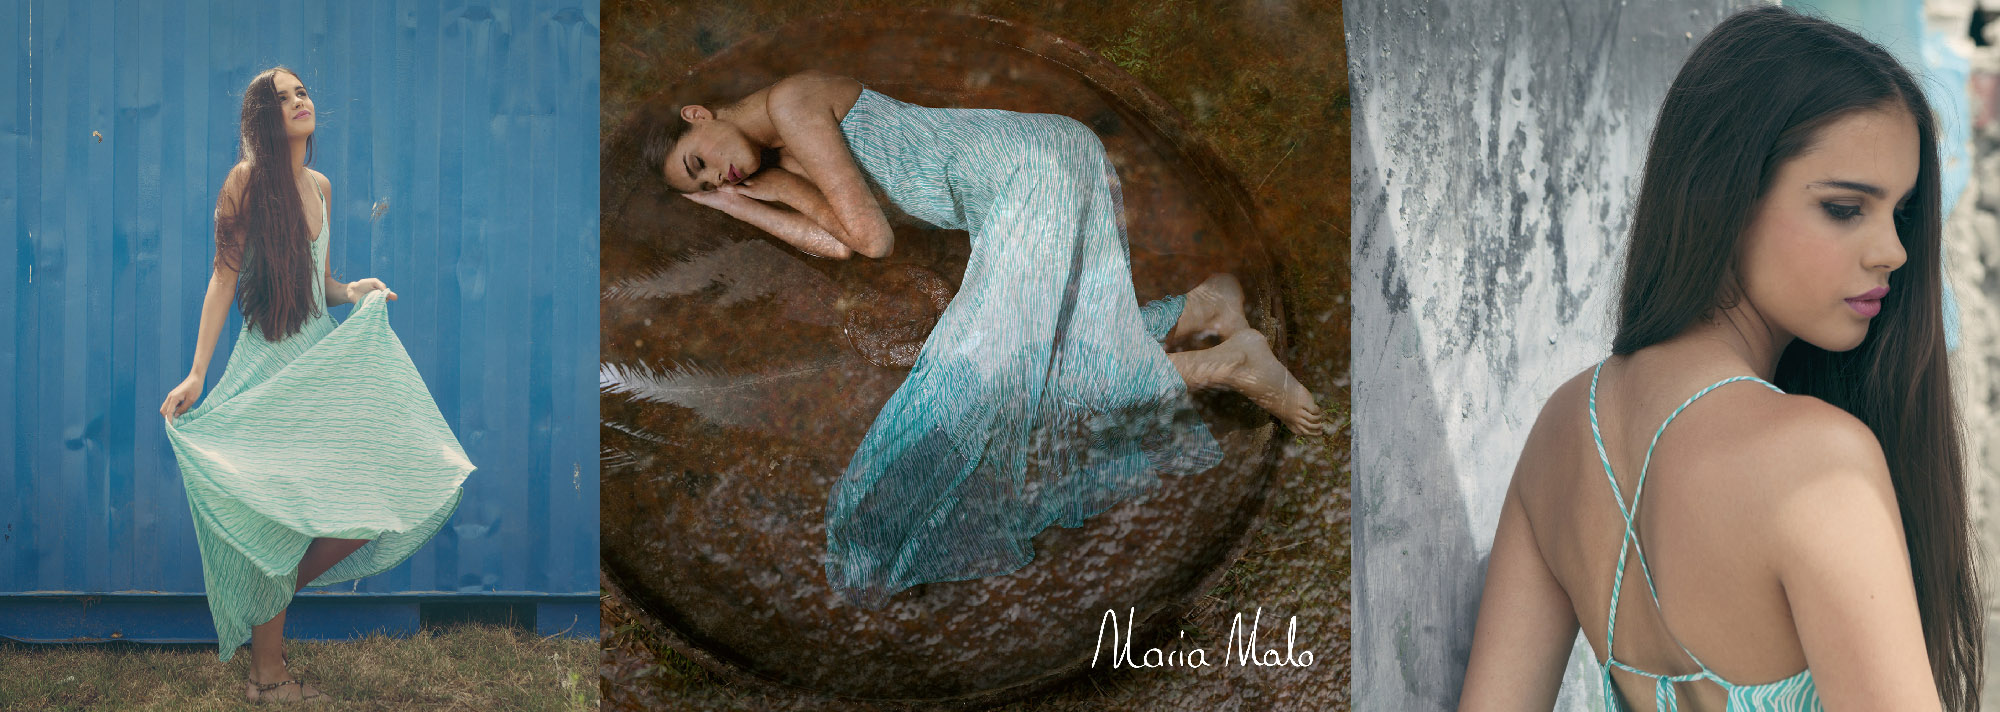 Maria Malo Autumn Collection '16 - Wild Andalucía